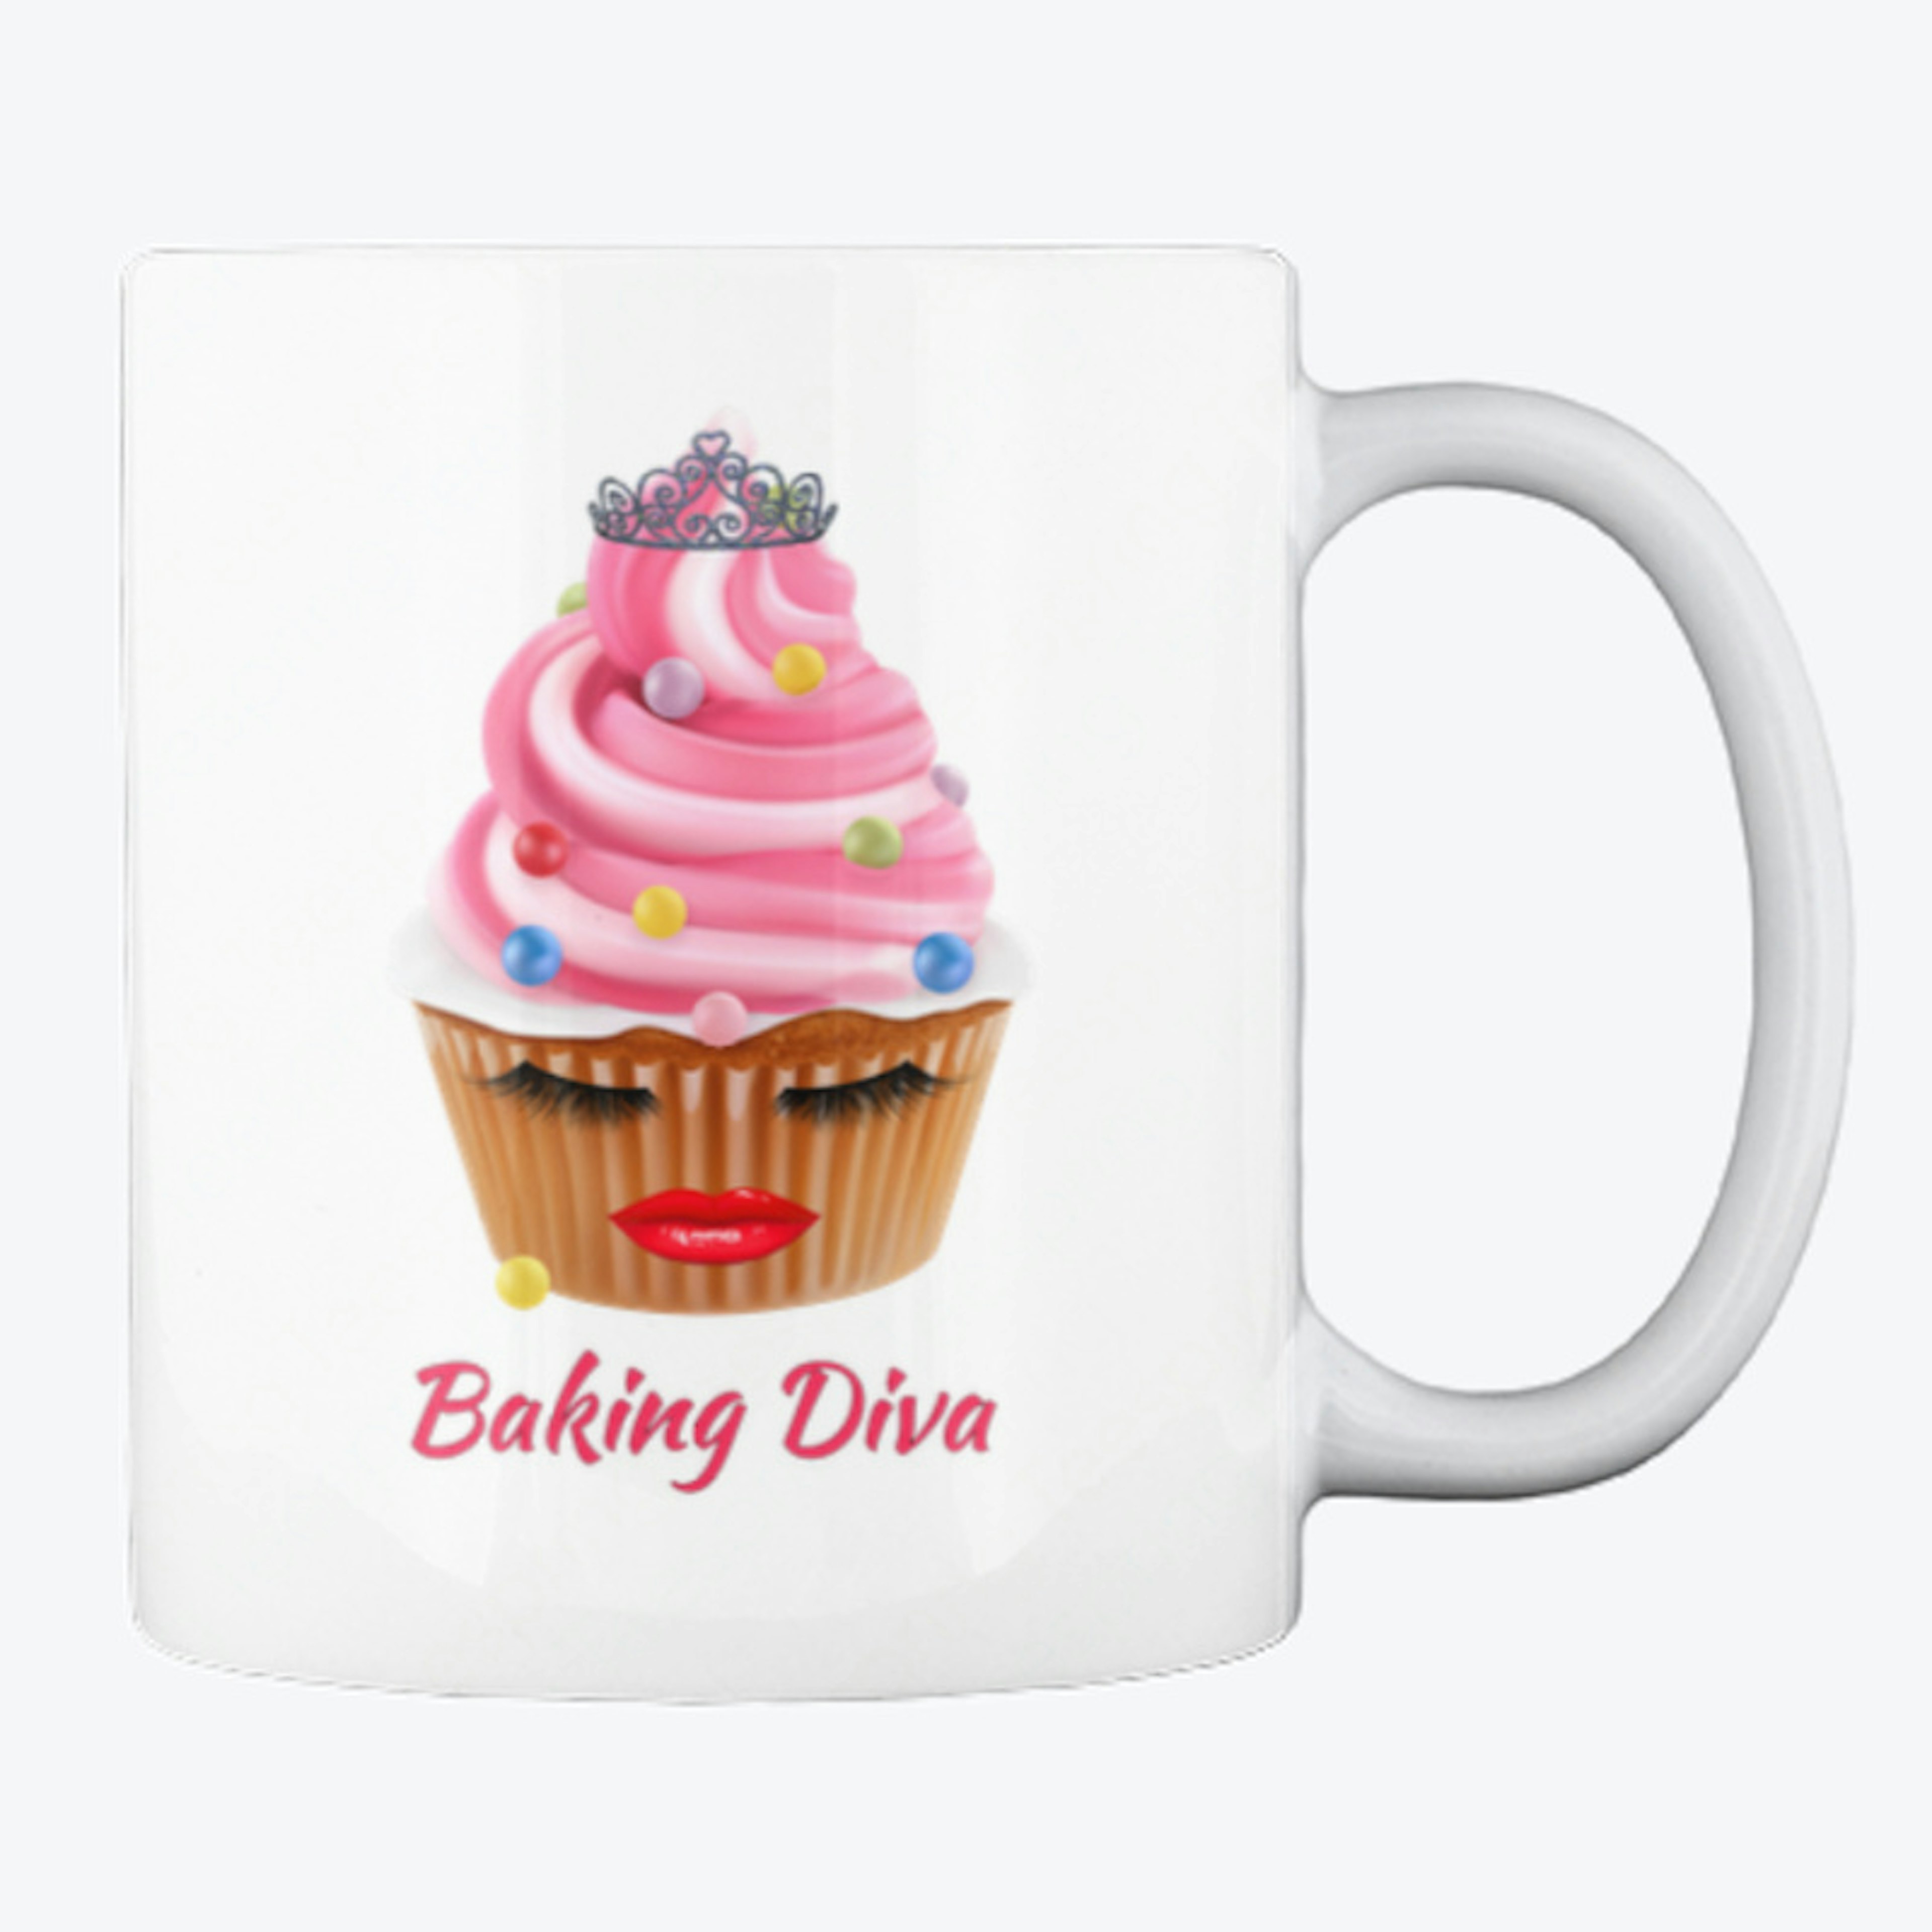 Baking Diva Cupcake Design